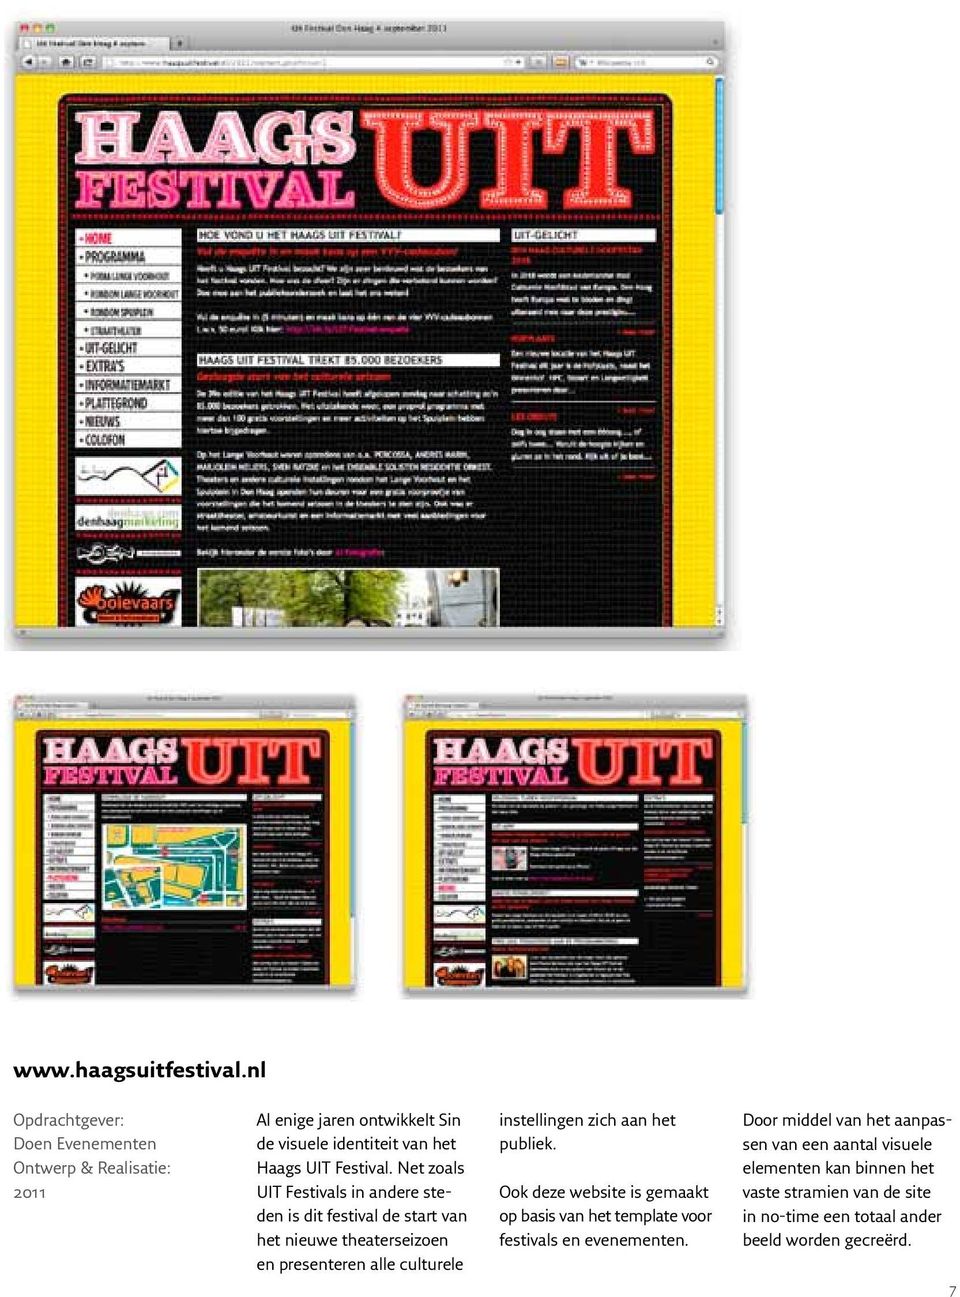 instellingen zich aan het publiek. Ook deze website is gemaakt op basis van het template voor festivals en evenementen.